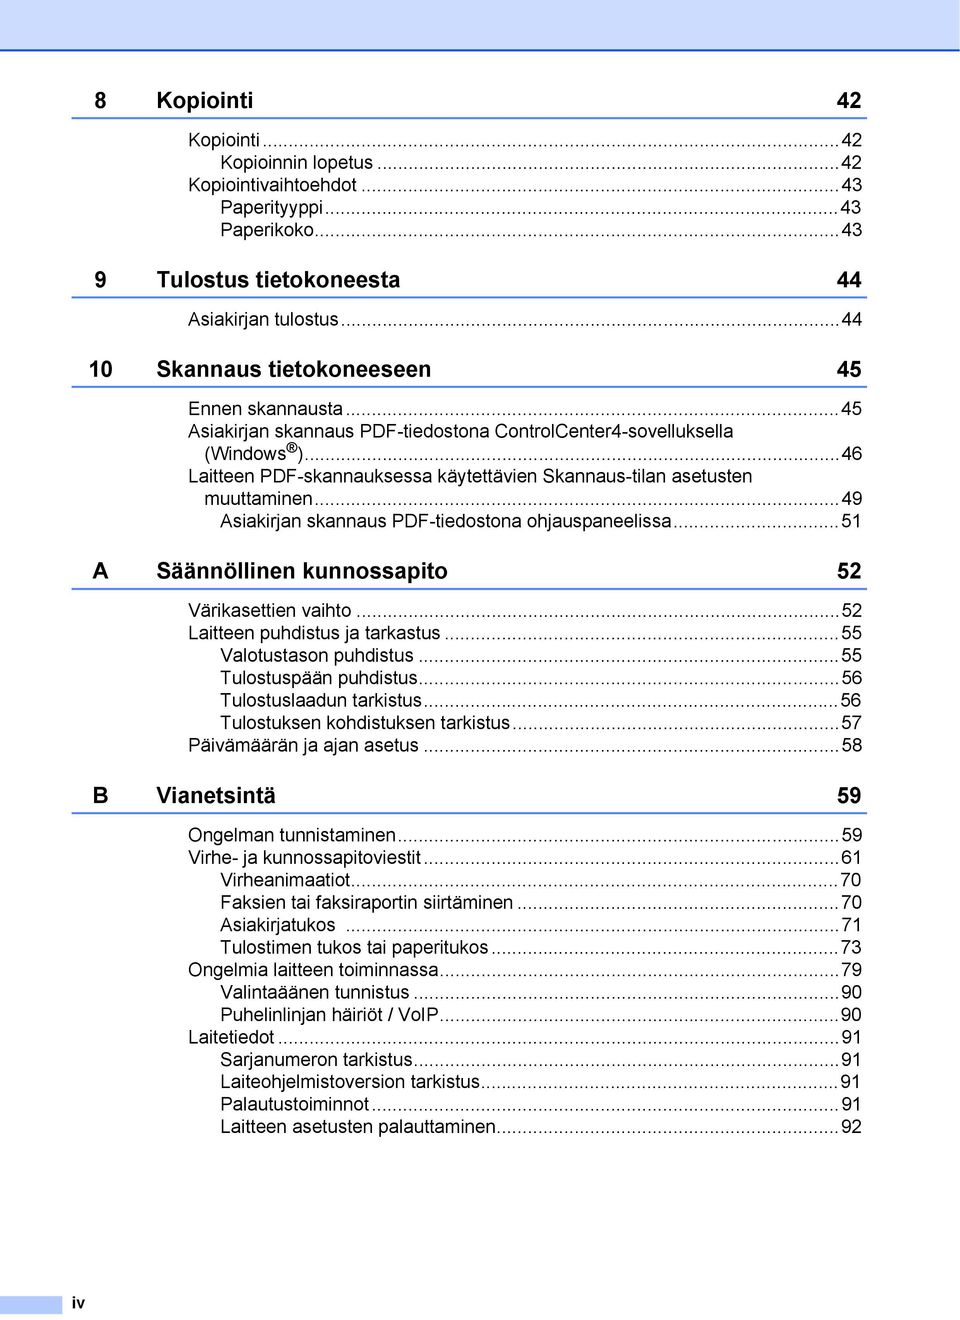 ..46 Laitteen PDF-skannauksessa käytettävien Skannaus-tilan asetusten muuttaminen...49 Asiakirjan skannaus PDF-tiedostona ohjauspaneelissa...51 A Säännöllinen kunnossapito 52 Värikasettien vaihto.